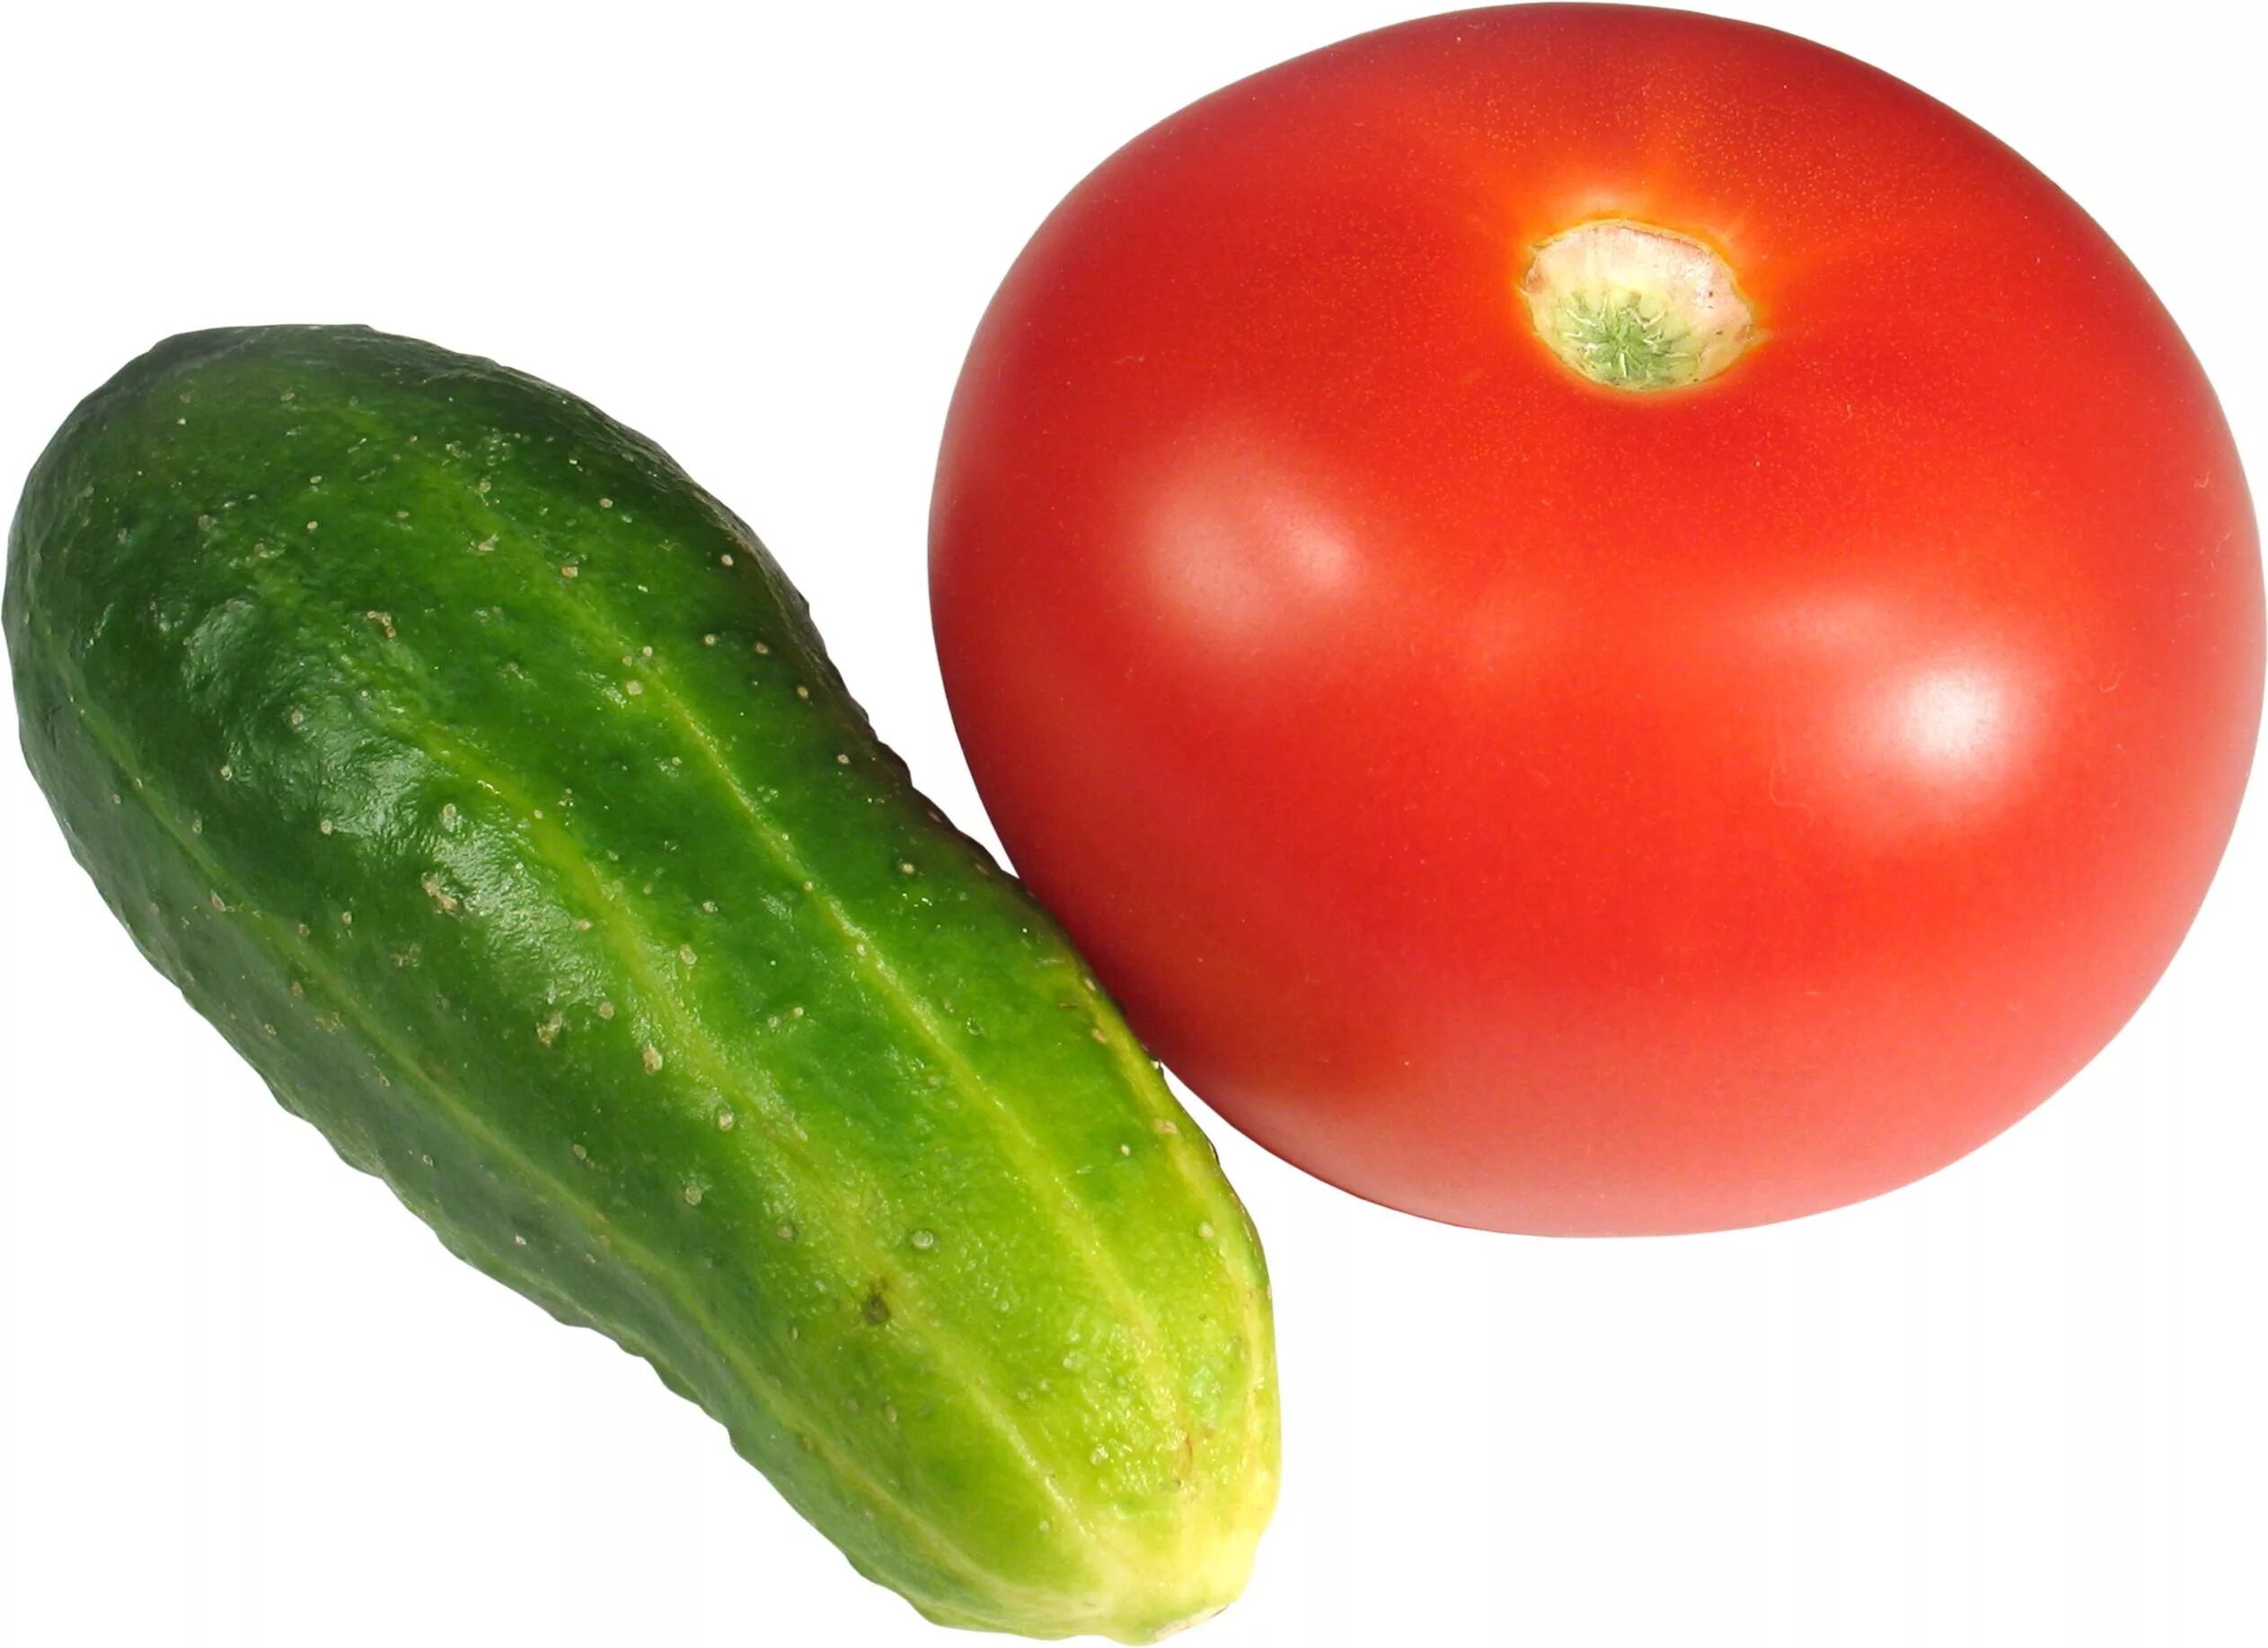 Картинка овощей по отдельности. Огурцы и помидоры. Овощи и фрукты по отдельности. Огурчики помидорчики. Овощи для детей по отдельности.